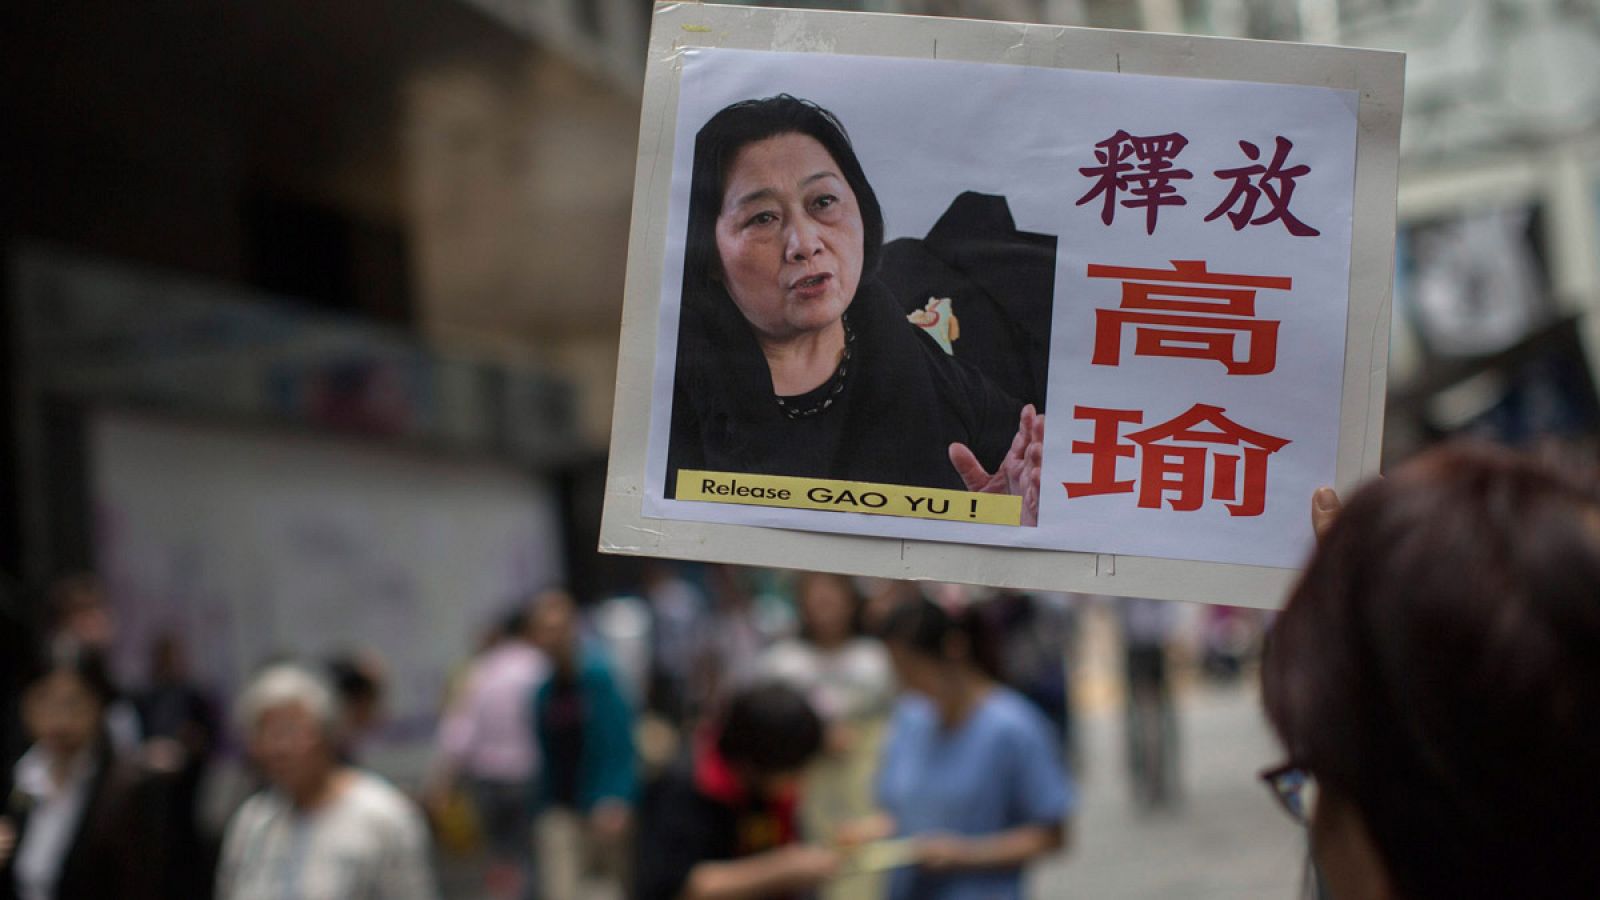 Un manifestante muestra una fotografía de la periodista china Gao Yu durante una protesta de apoyo en la que exigen su liberación en Hong Kong.